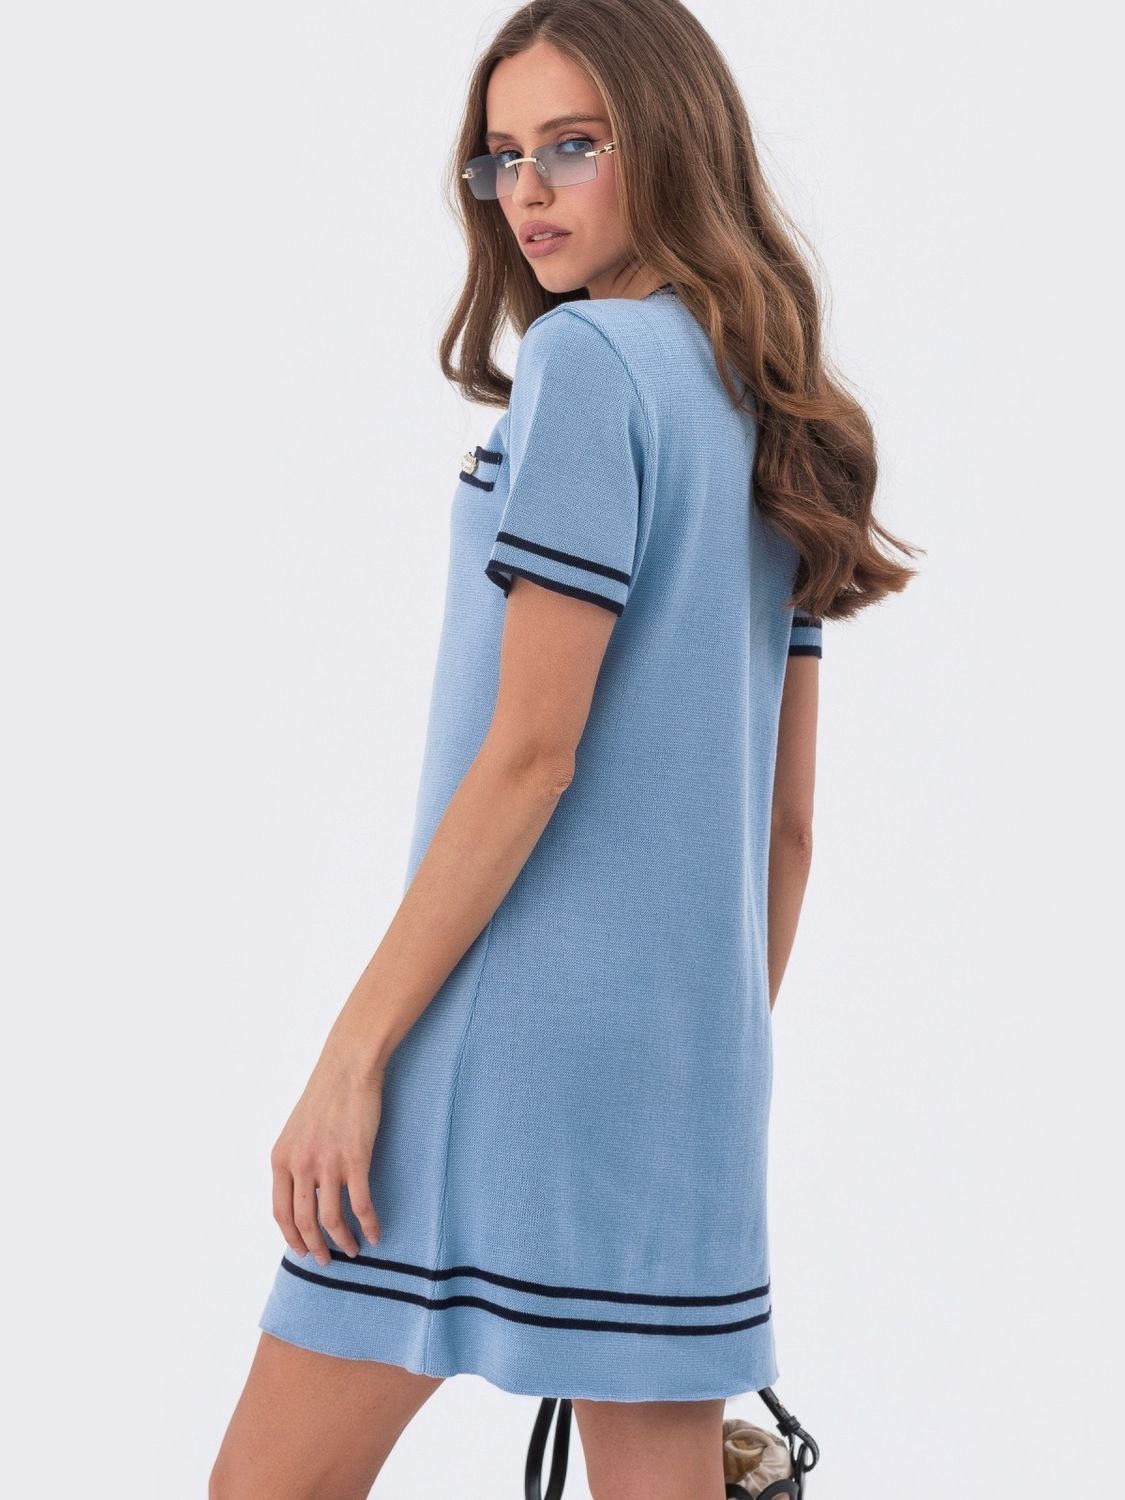 Коротка сукня дрібної в'язки блакитного кольору - фото